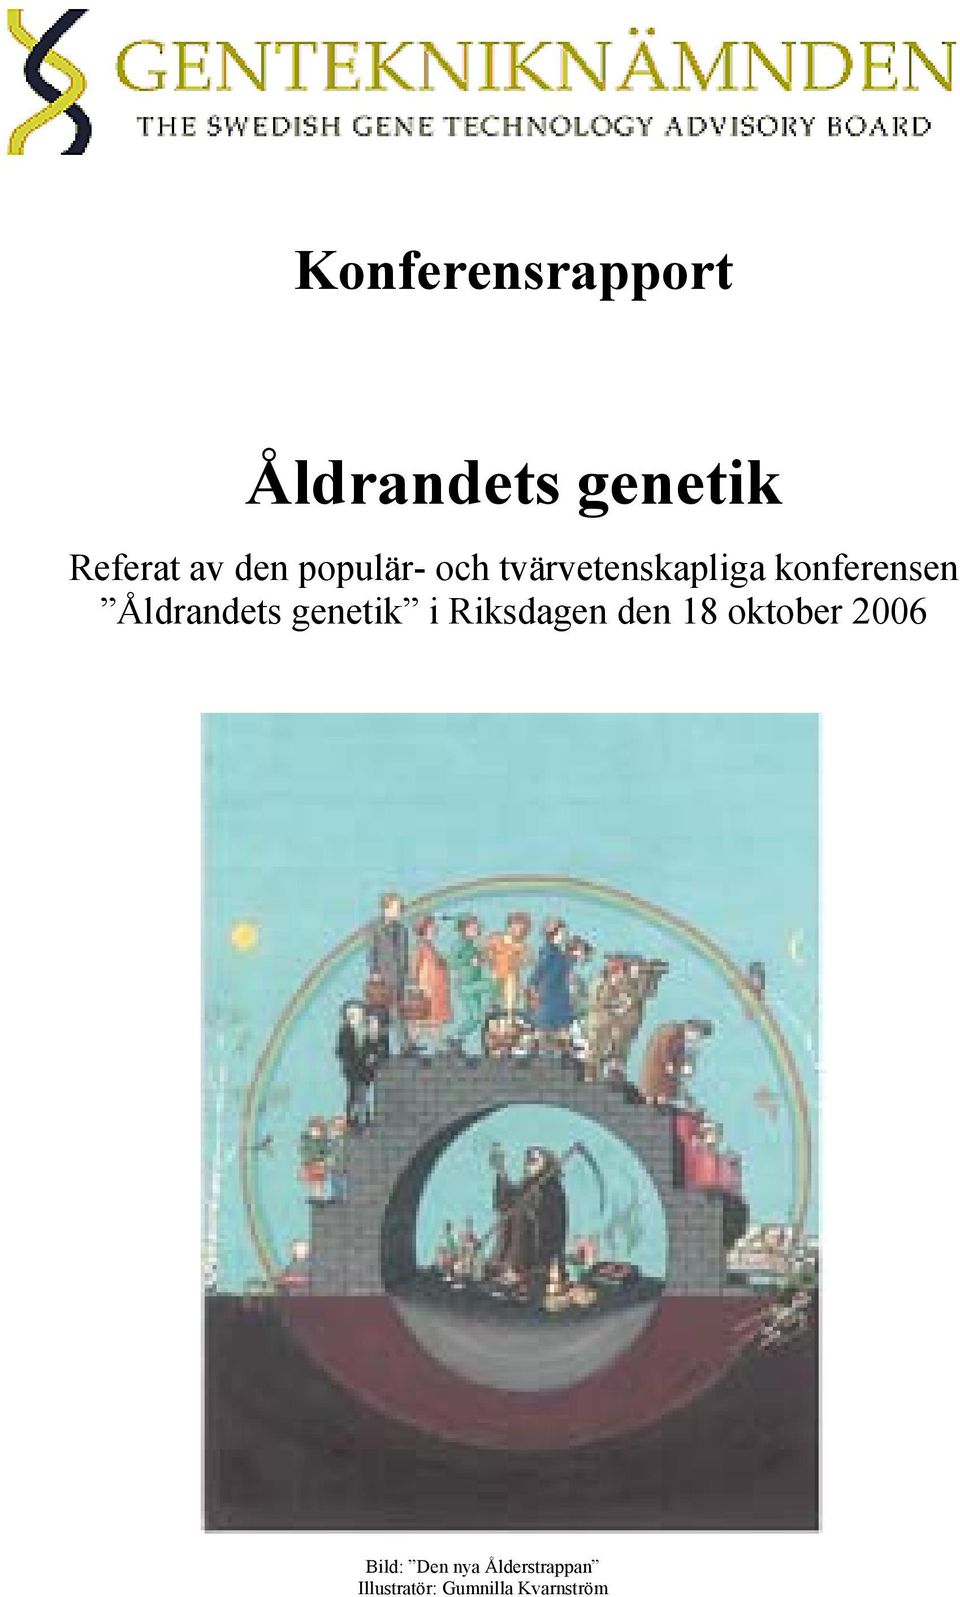 Åldrandets genetik i Riksdagen den 18 oktober 2006